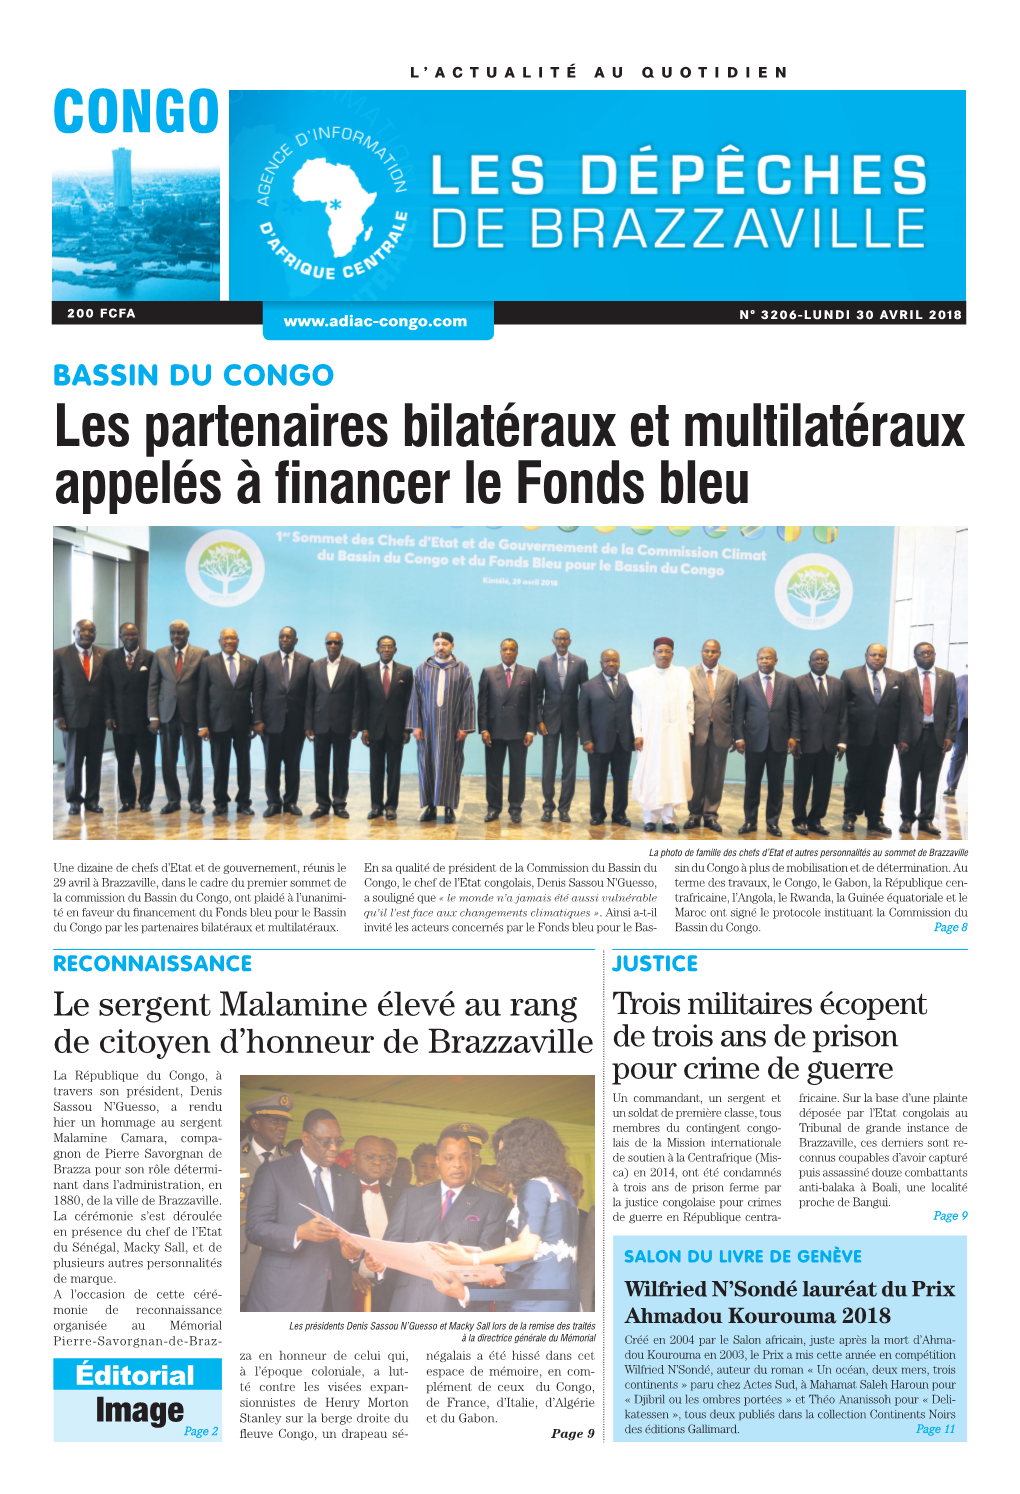 CONGO Les Partenaires Bilatéraux Et Multilatéraux Appelés À Financer Le Fonds Bleu